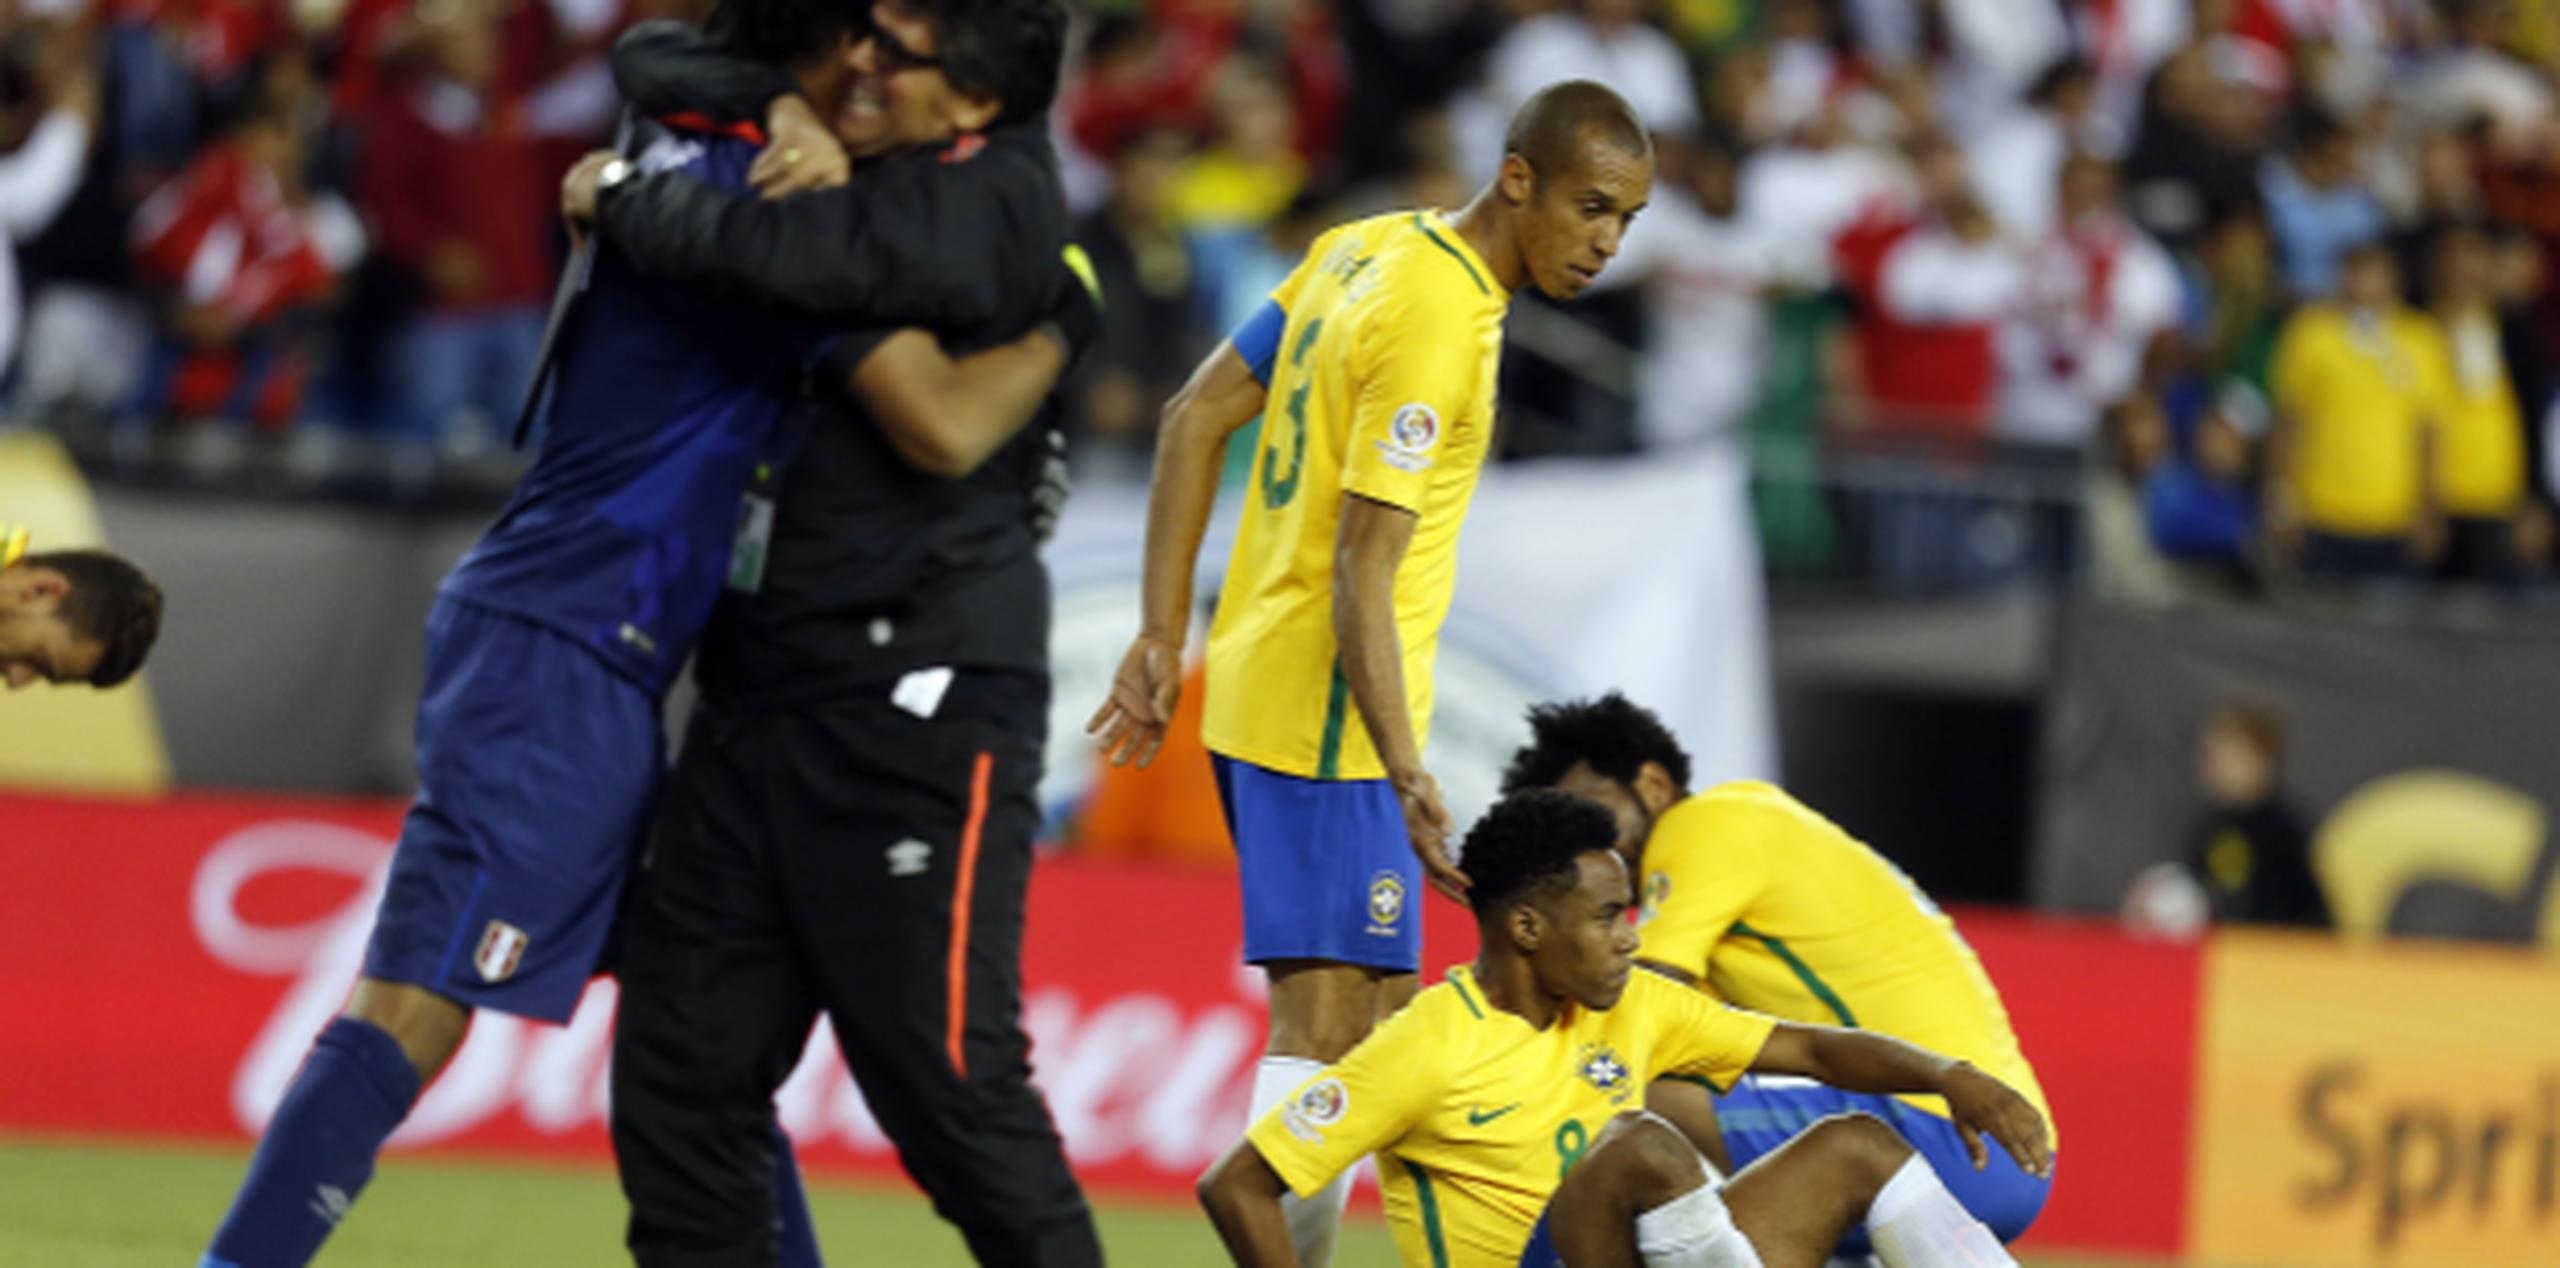 Jugadores brasileños se desploman en el campo sumidos en pena tras ser eliminados, mientras se desata la eufórica celebración de los miembros del equipo de Perú. (EFE/MAURICIO DUEÑAS CASTAÑEDA)
